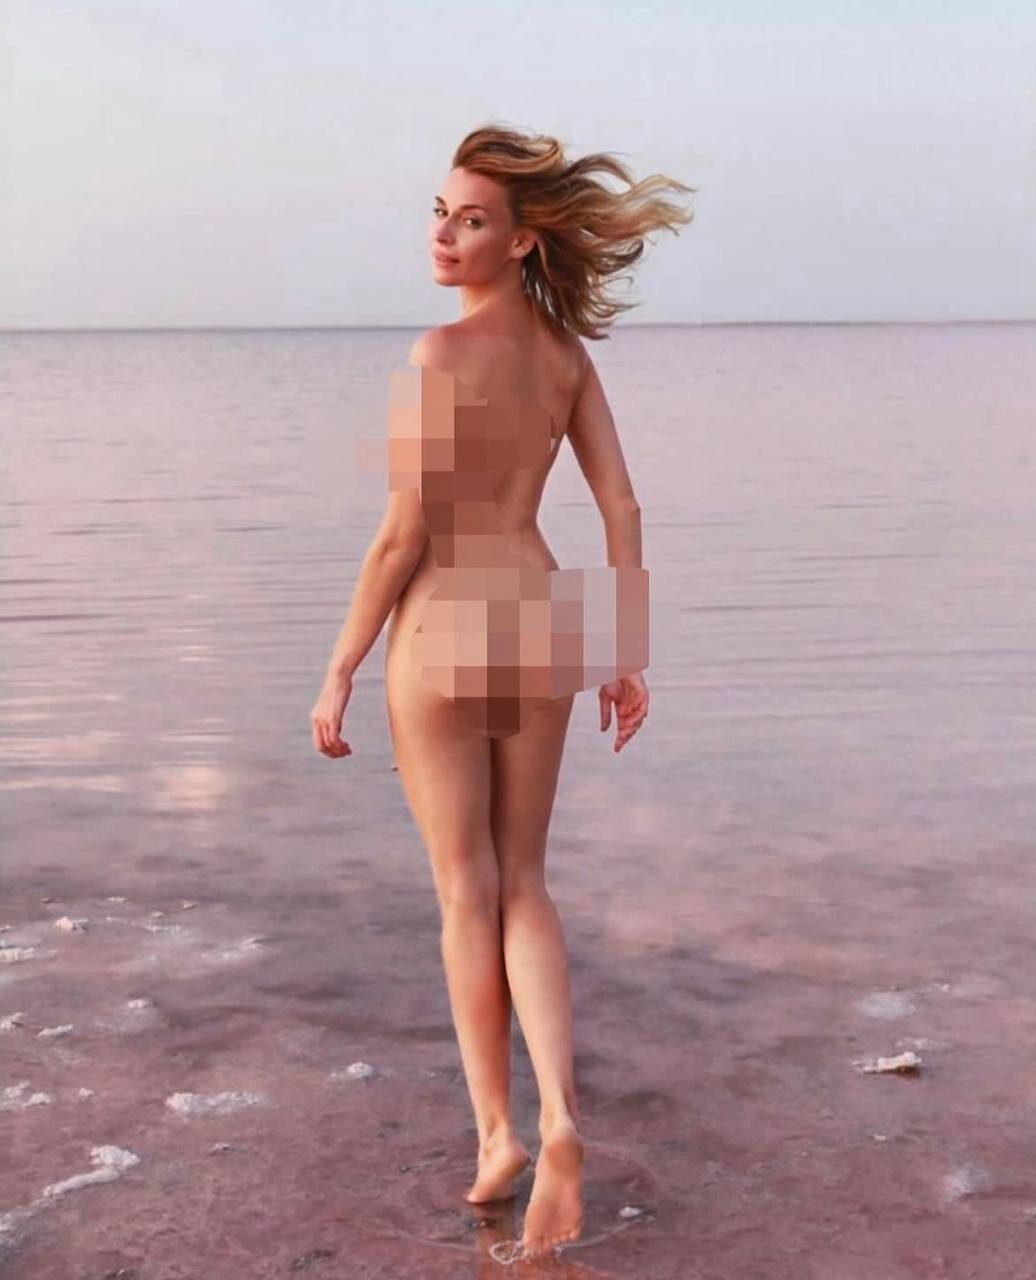 Любовь Толкалина показала голую попку с непривычного ракурса и поплатилась  за это репутацией: фото без цензуры